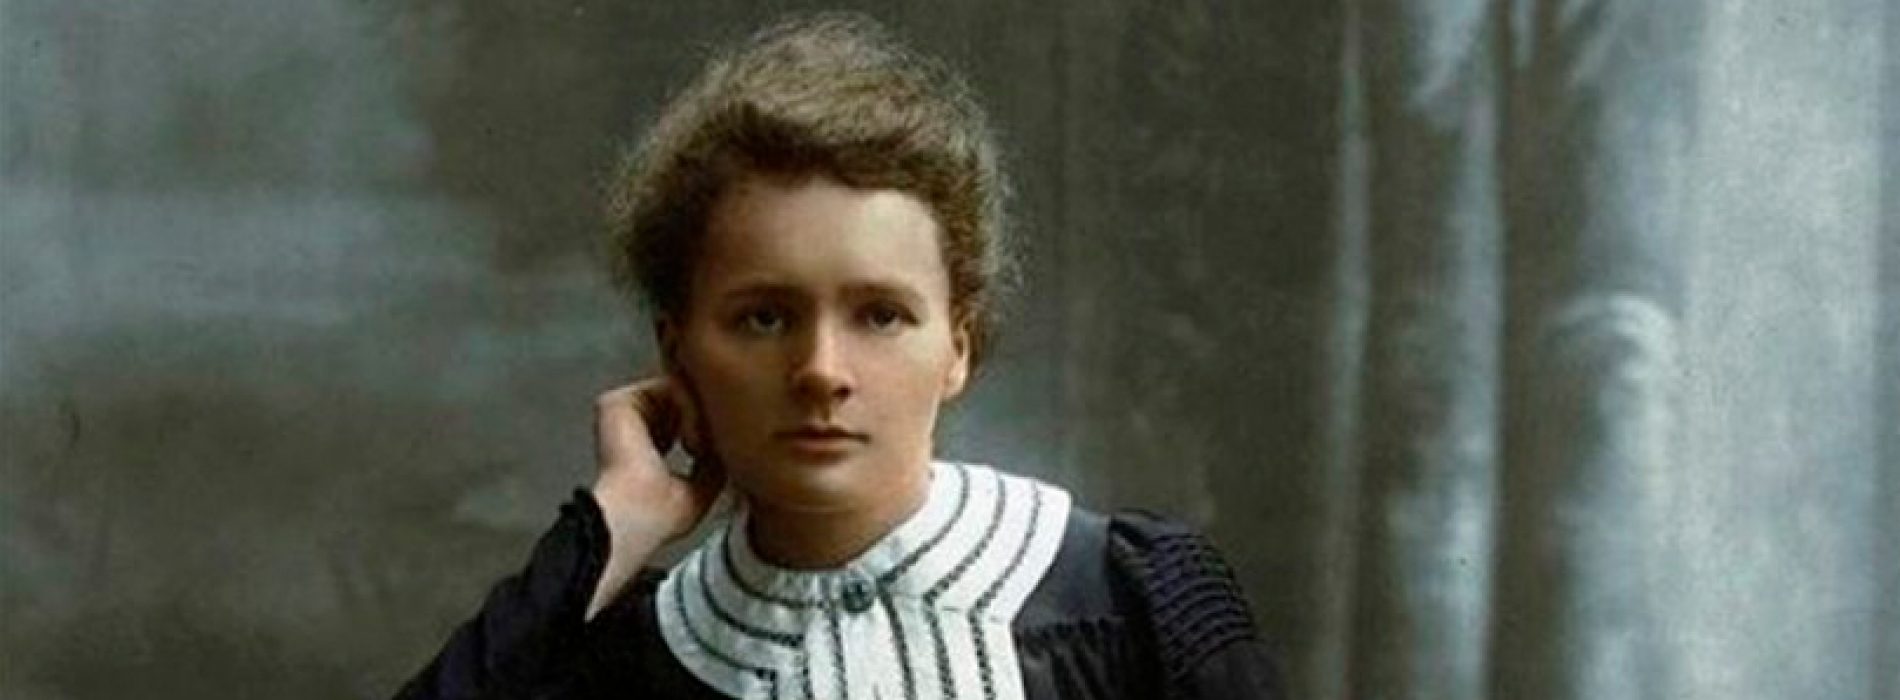 Marie Curie murió hace 84 años: su pensamiento, en 7 citas